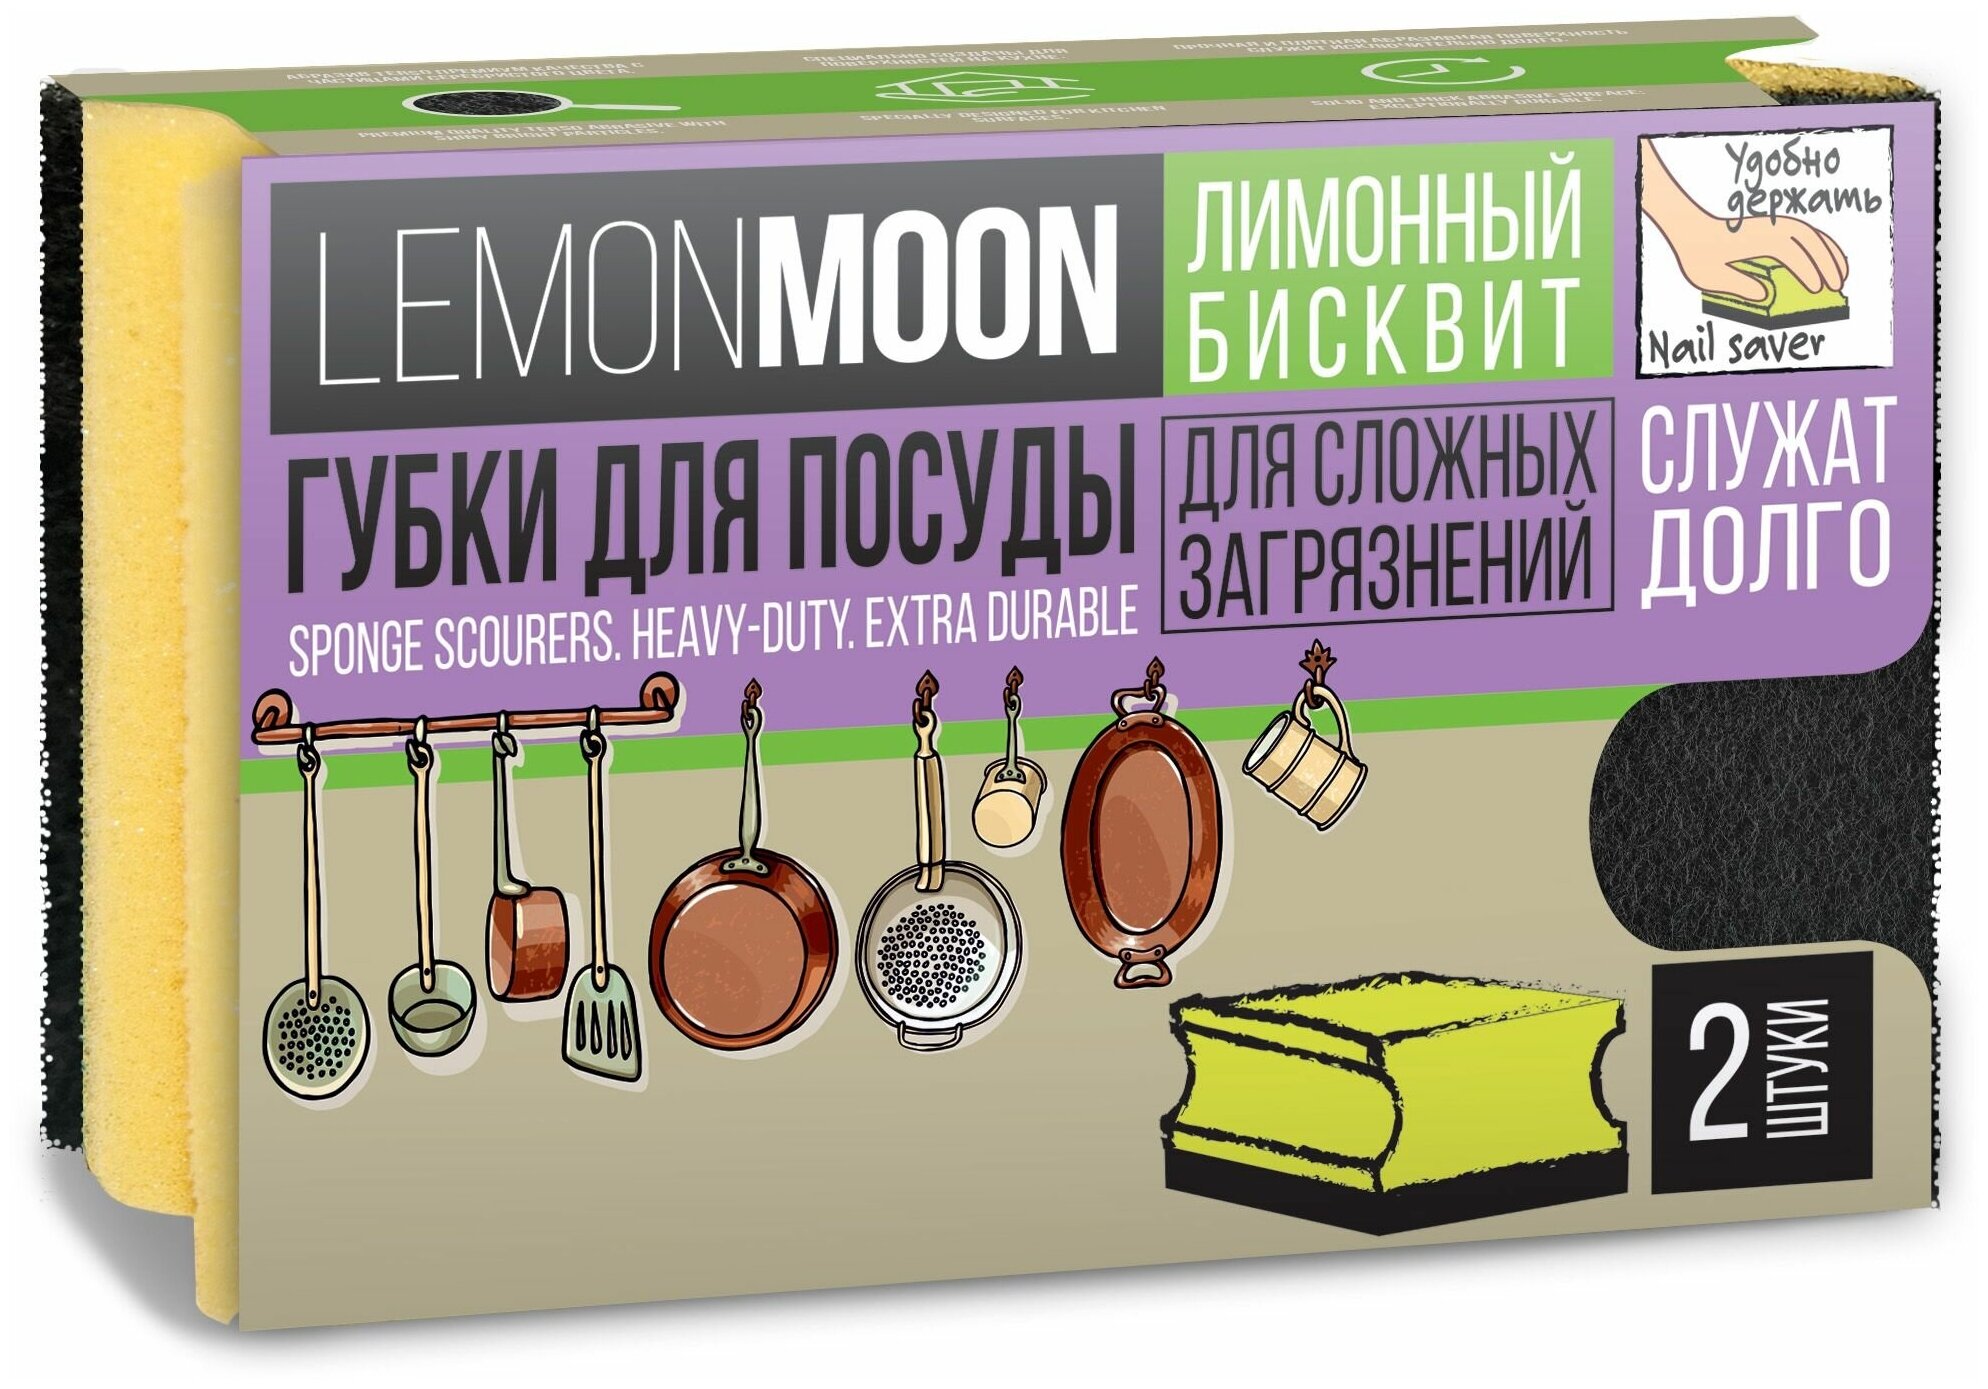 Lemon Moon Retro бисквит Губка для посуды фреза 94х70х44 2 шт